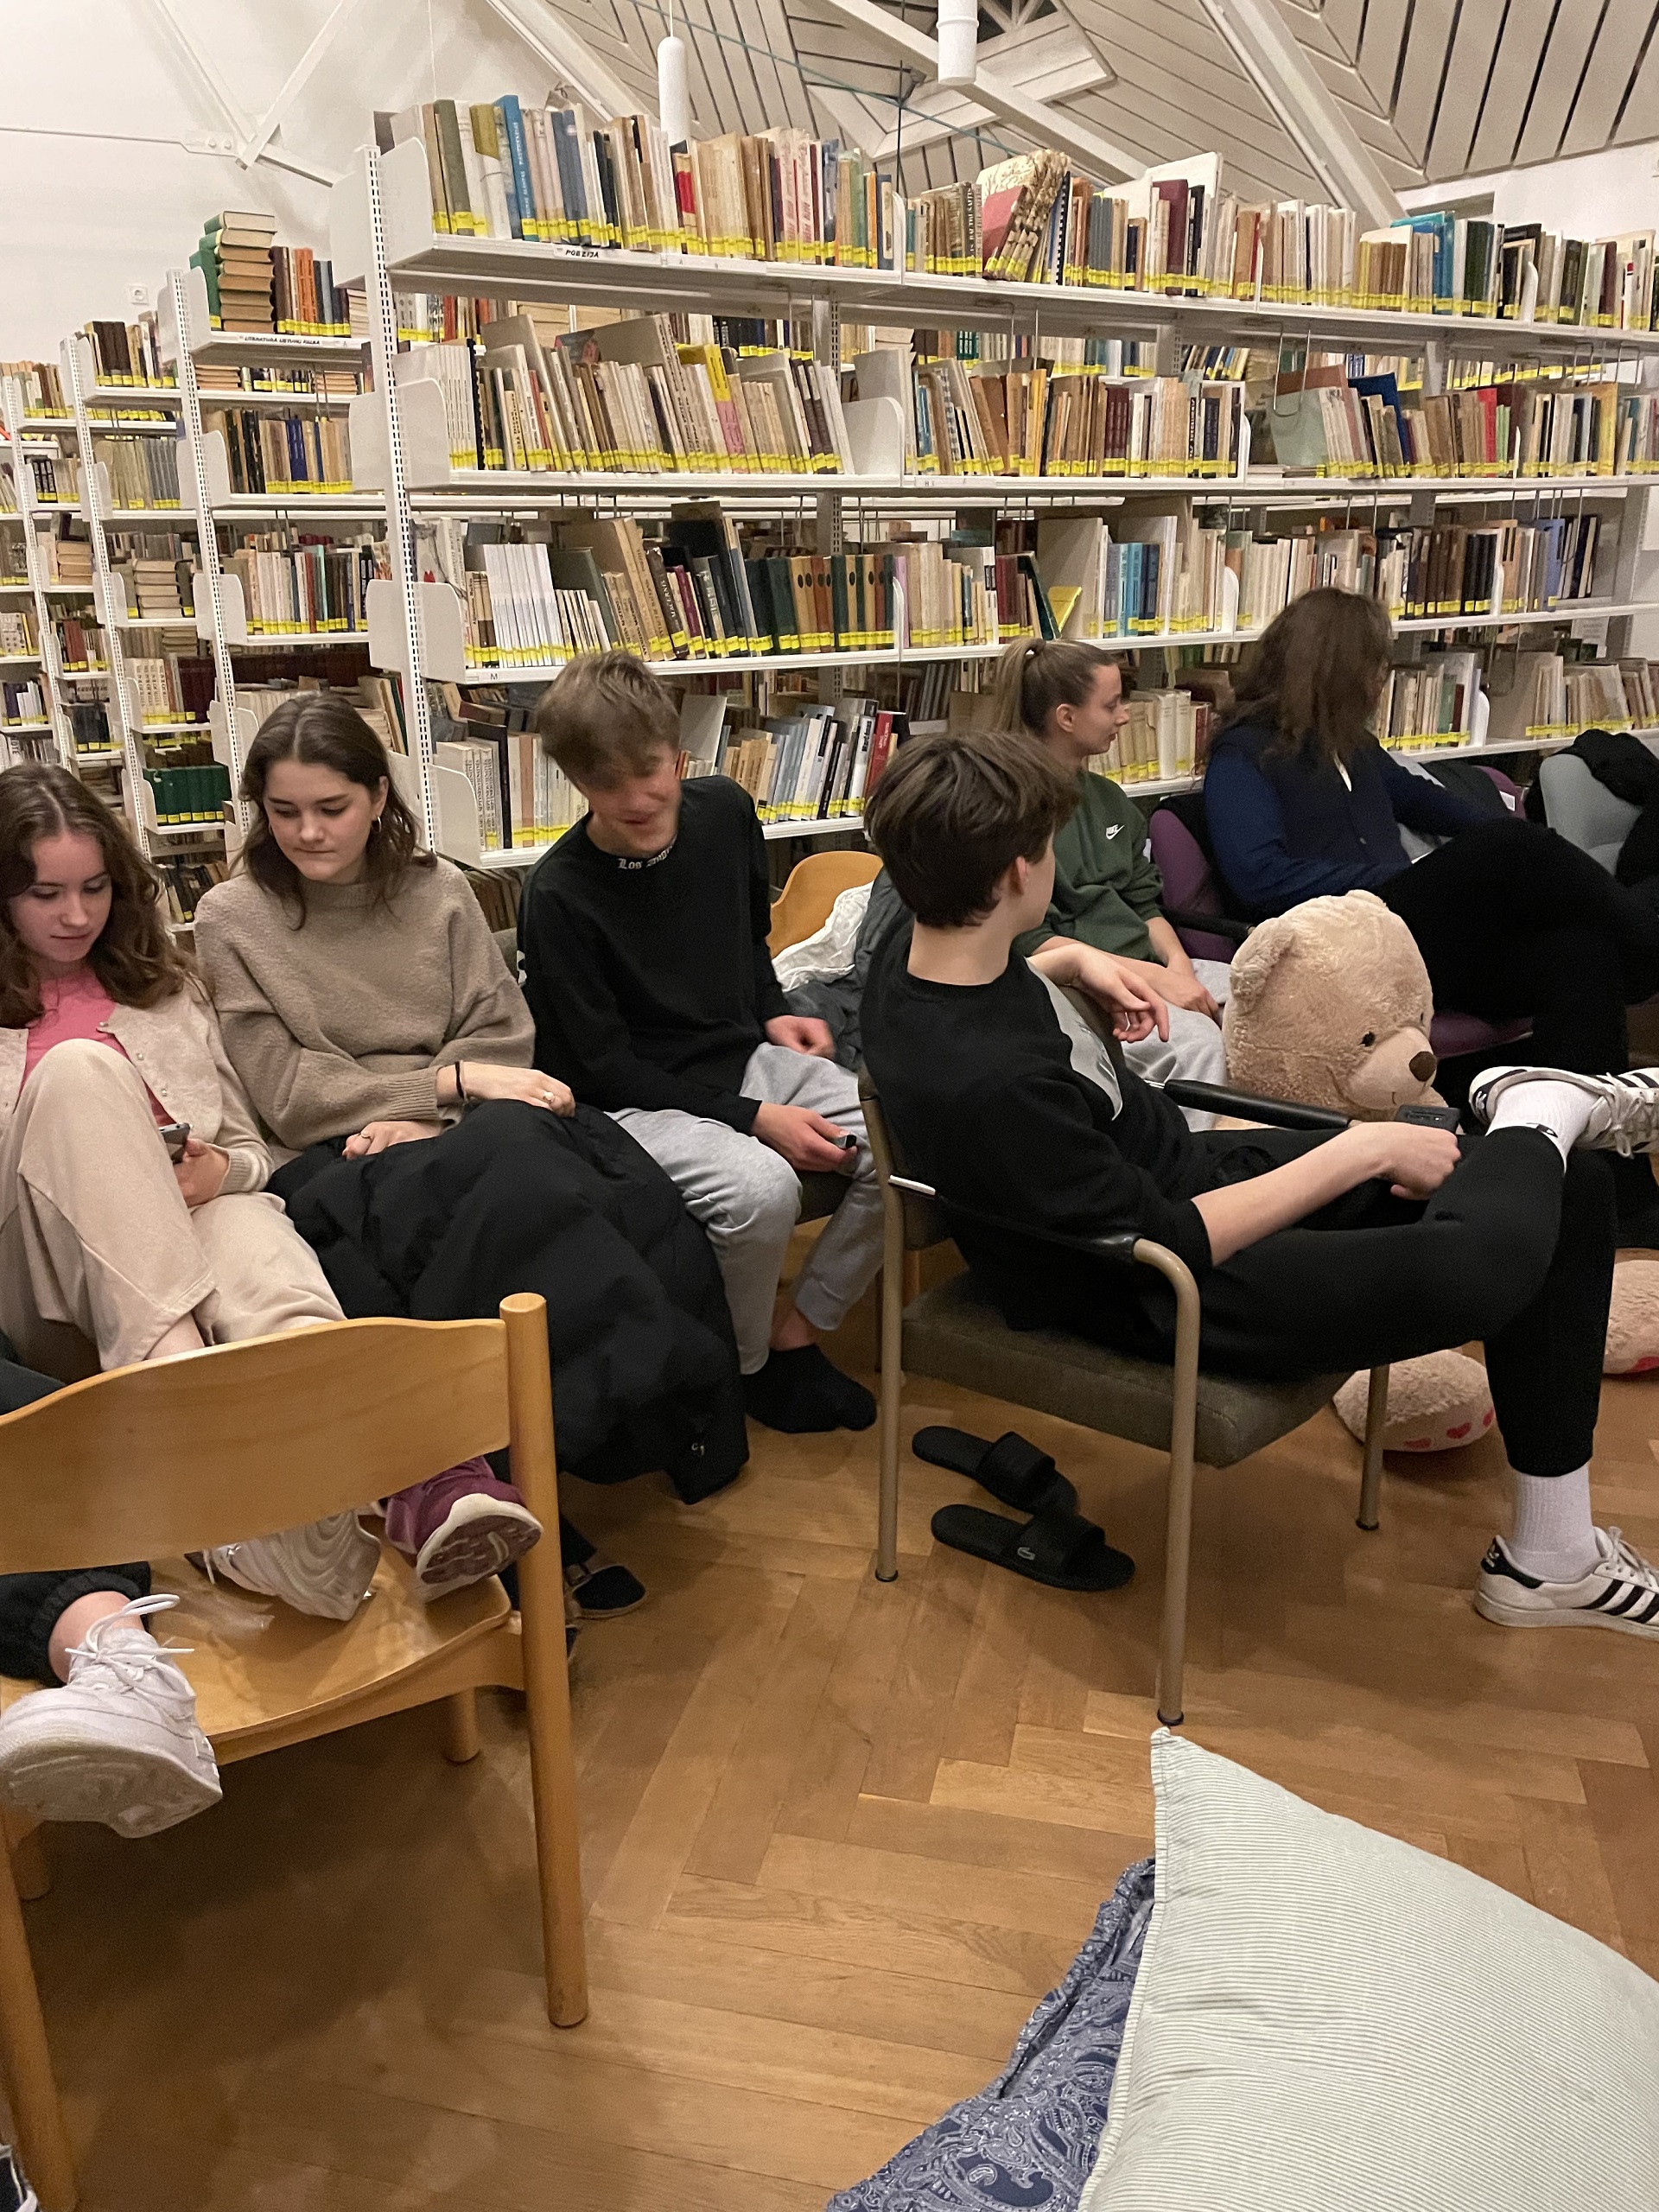 Katalikiško jaunimo grupės naktinės pamokos (Foto: D. Kriščiūnienė)